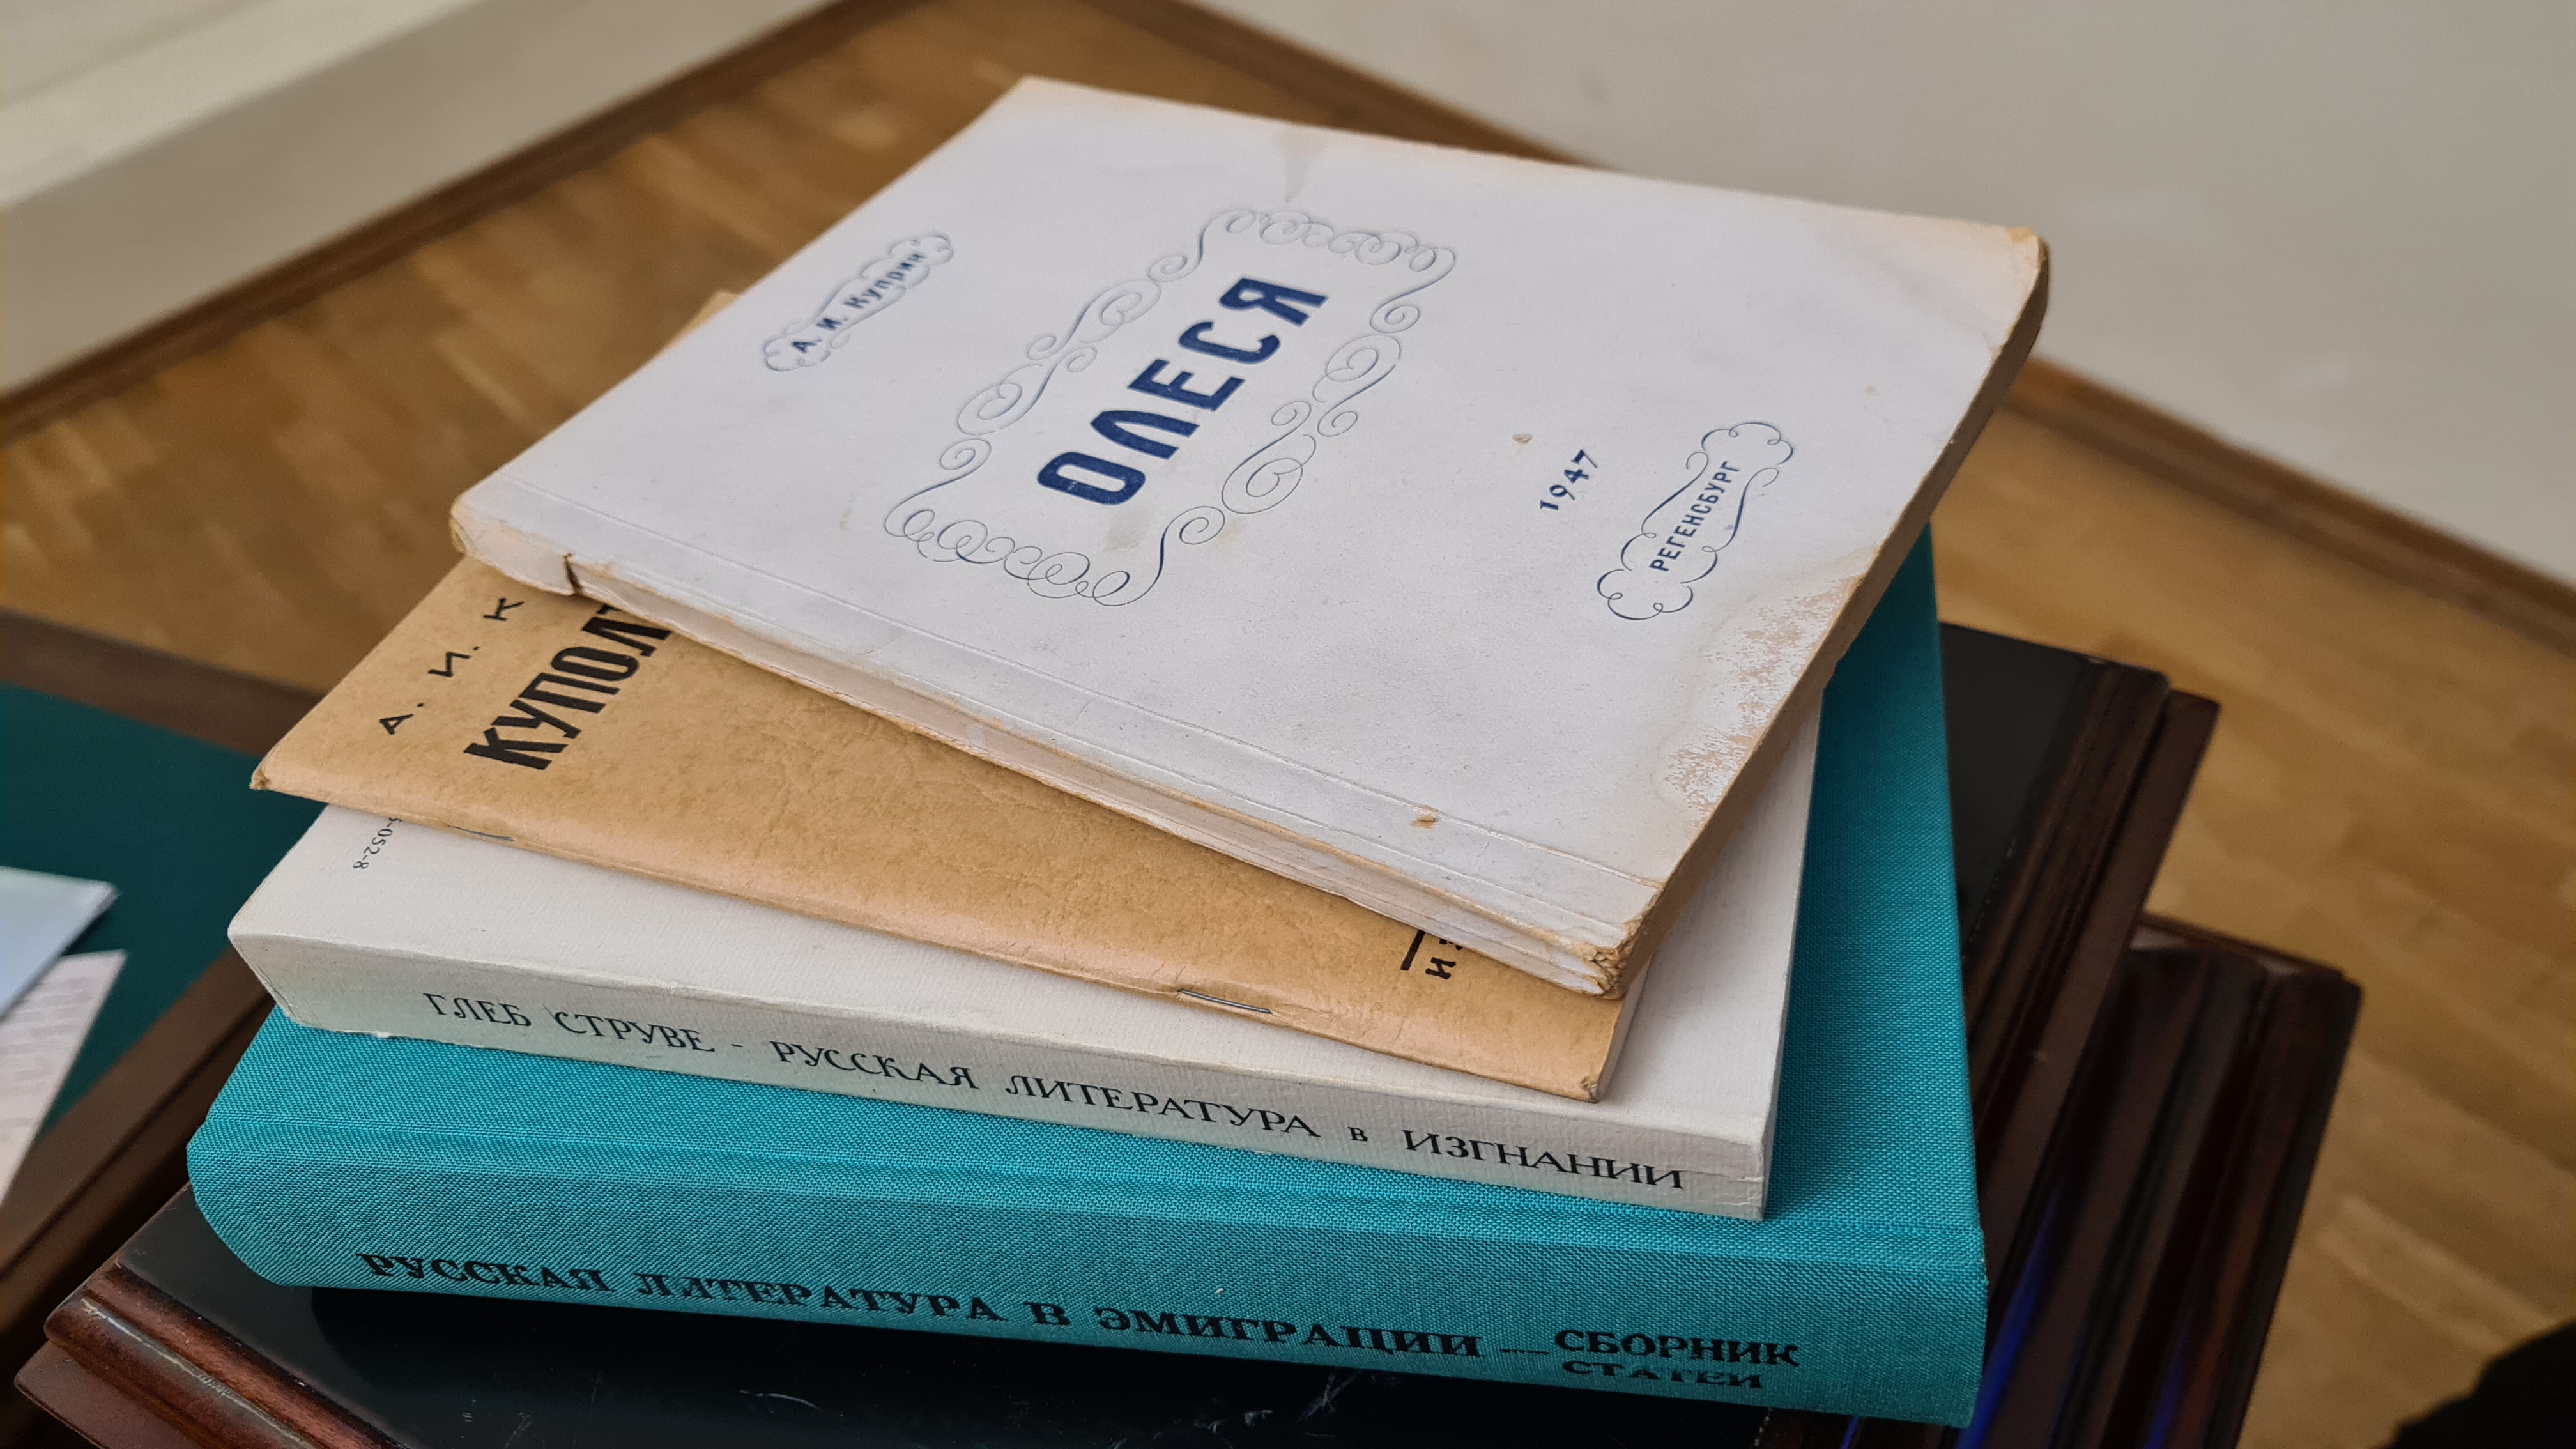 
		
		Музею Куприна в Наровчате передали уникальные книги и документы
		
	